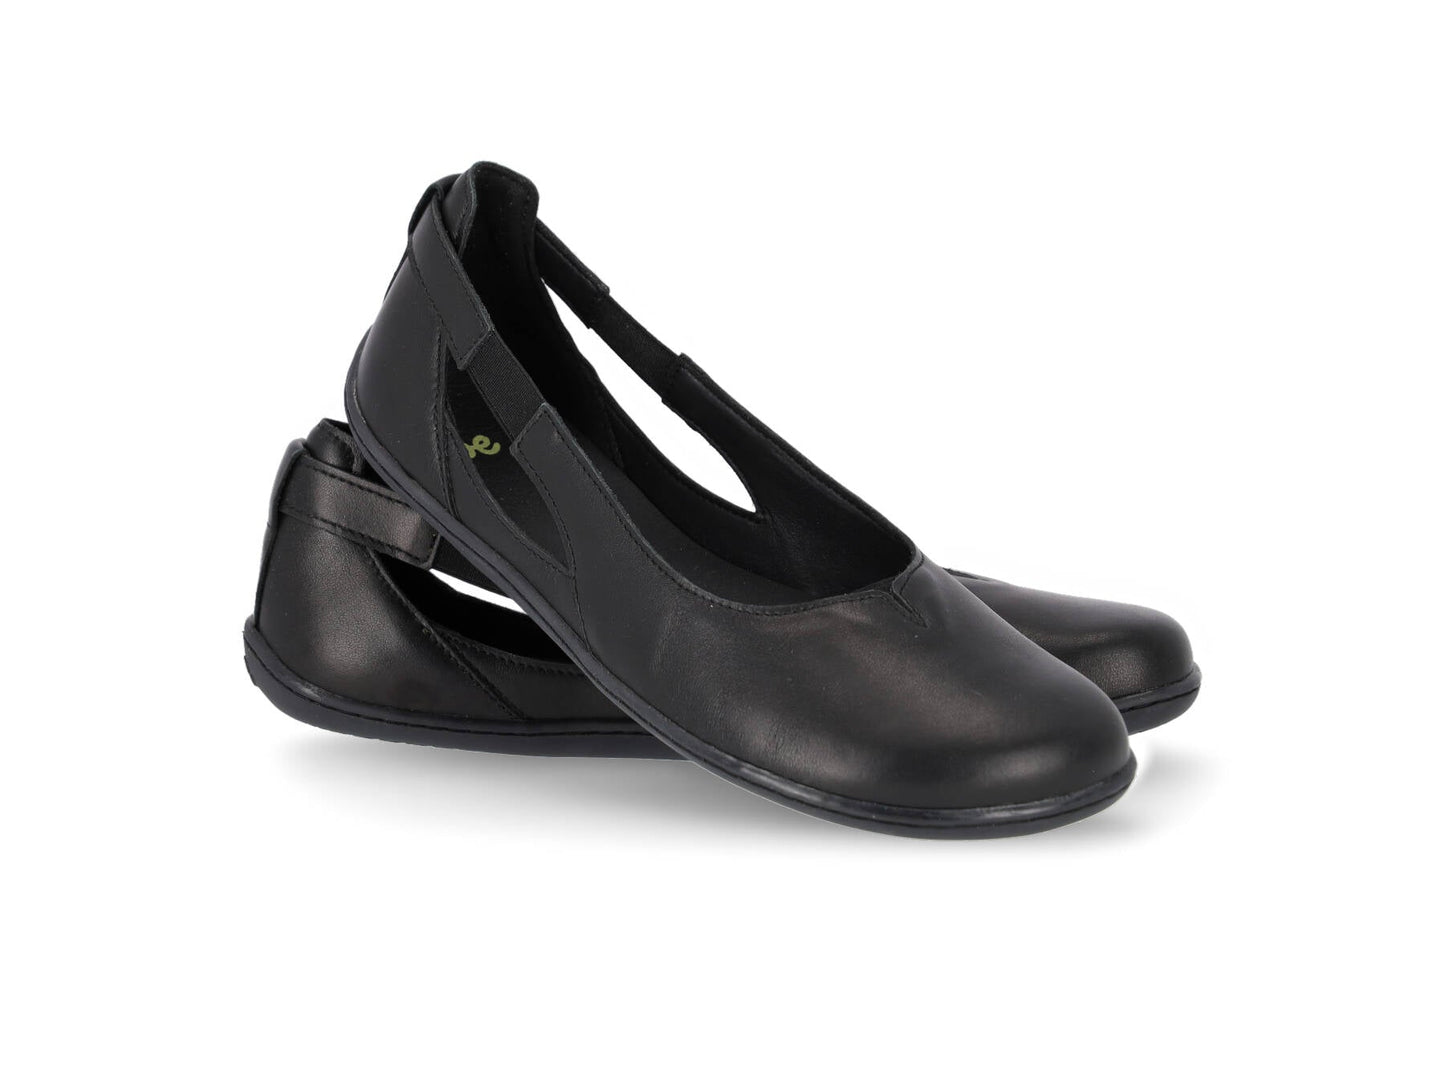 Be Lenka Bellissima Ballet Flats - All Black (size 36)